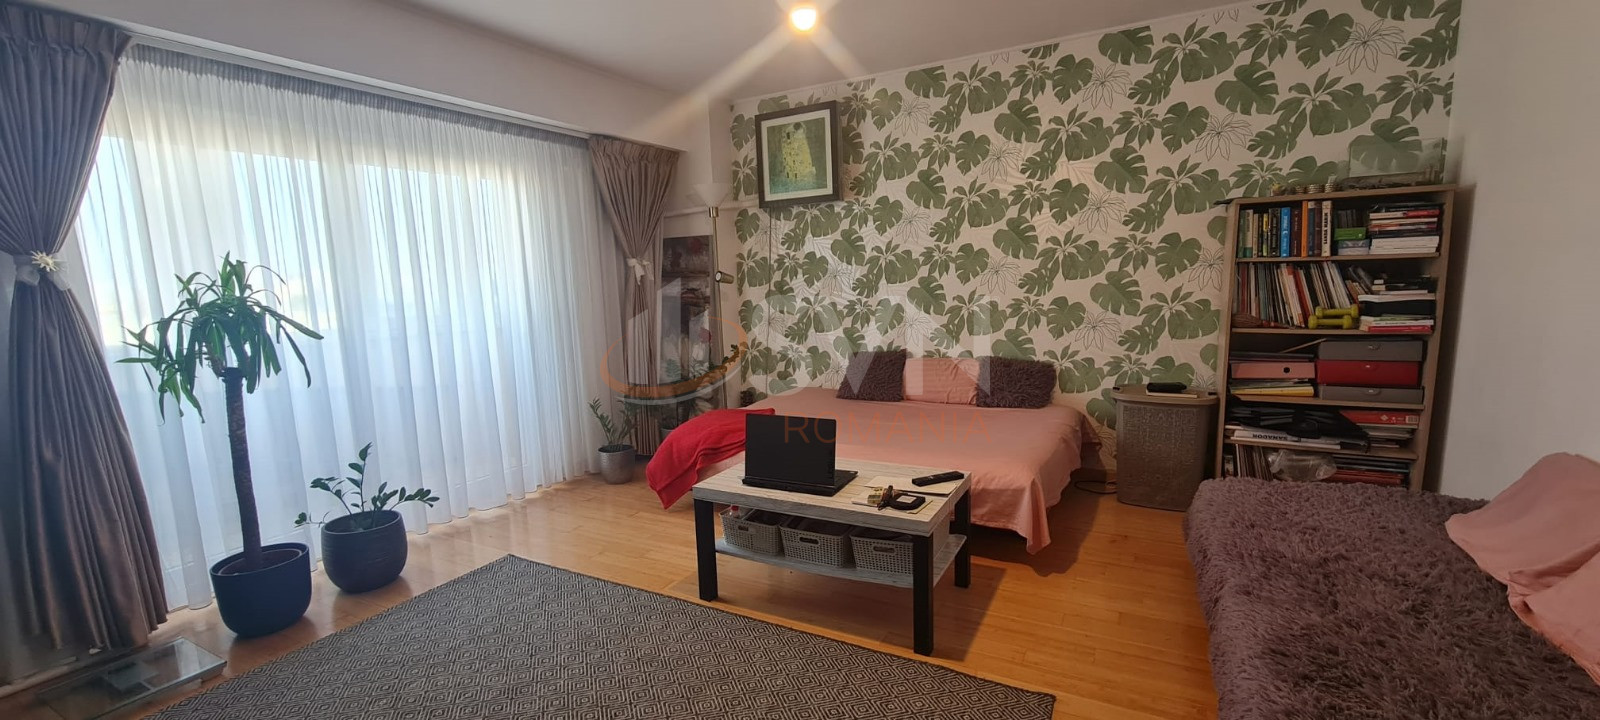 Apartament, 3 camere Bucuresti/Timpuri Noi